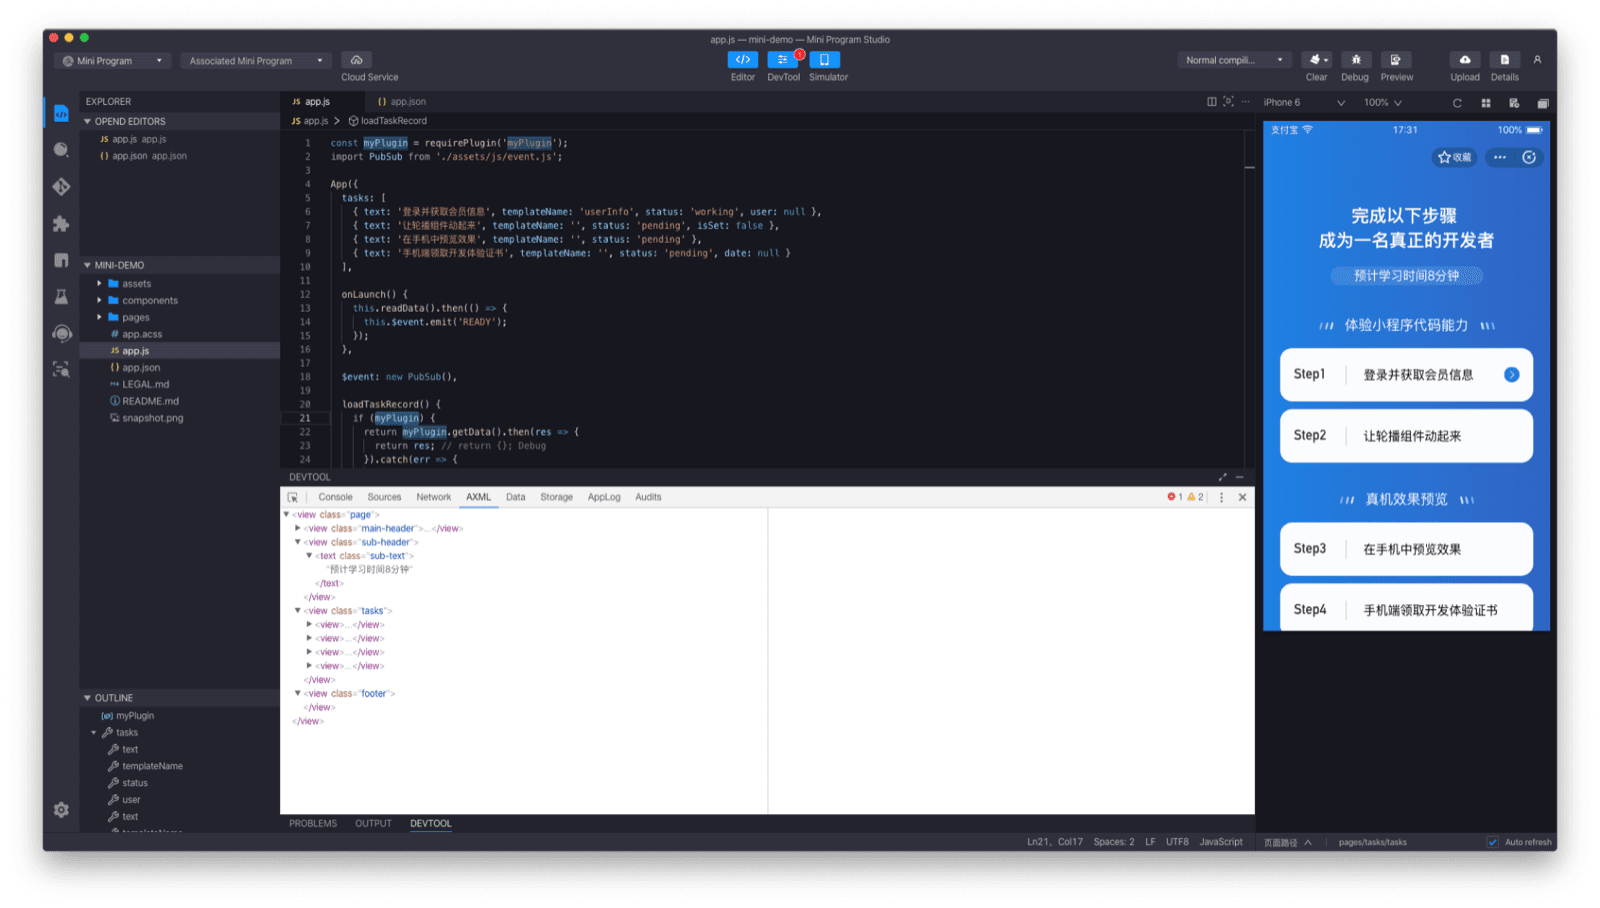 Jendela aplikasi Alipay DevTools menampilkan editor kode, simulator, dan debugger.